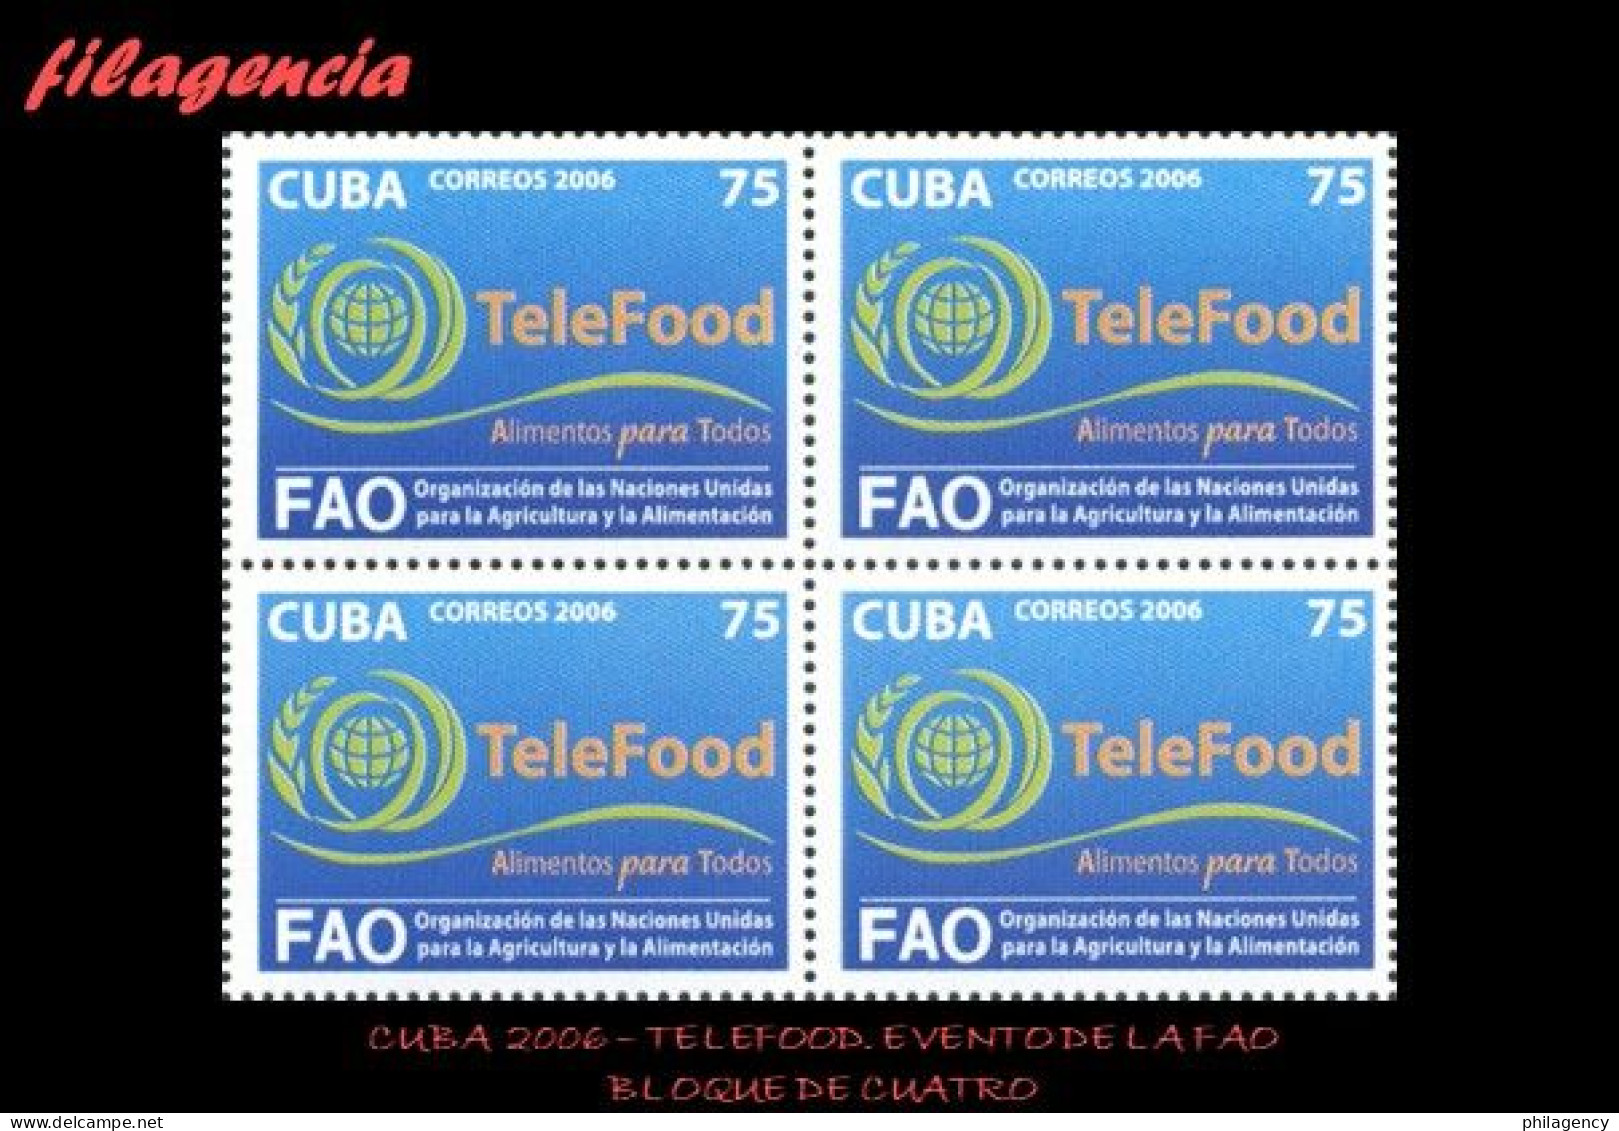 CUBA. BLOQUES DE CUATRO. 2006-29 EVENTO DE LA FAO TELEFOOD - Nuevos